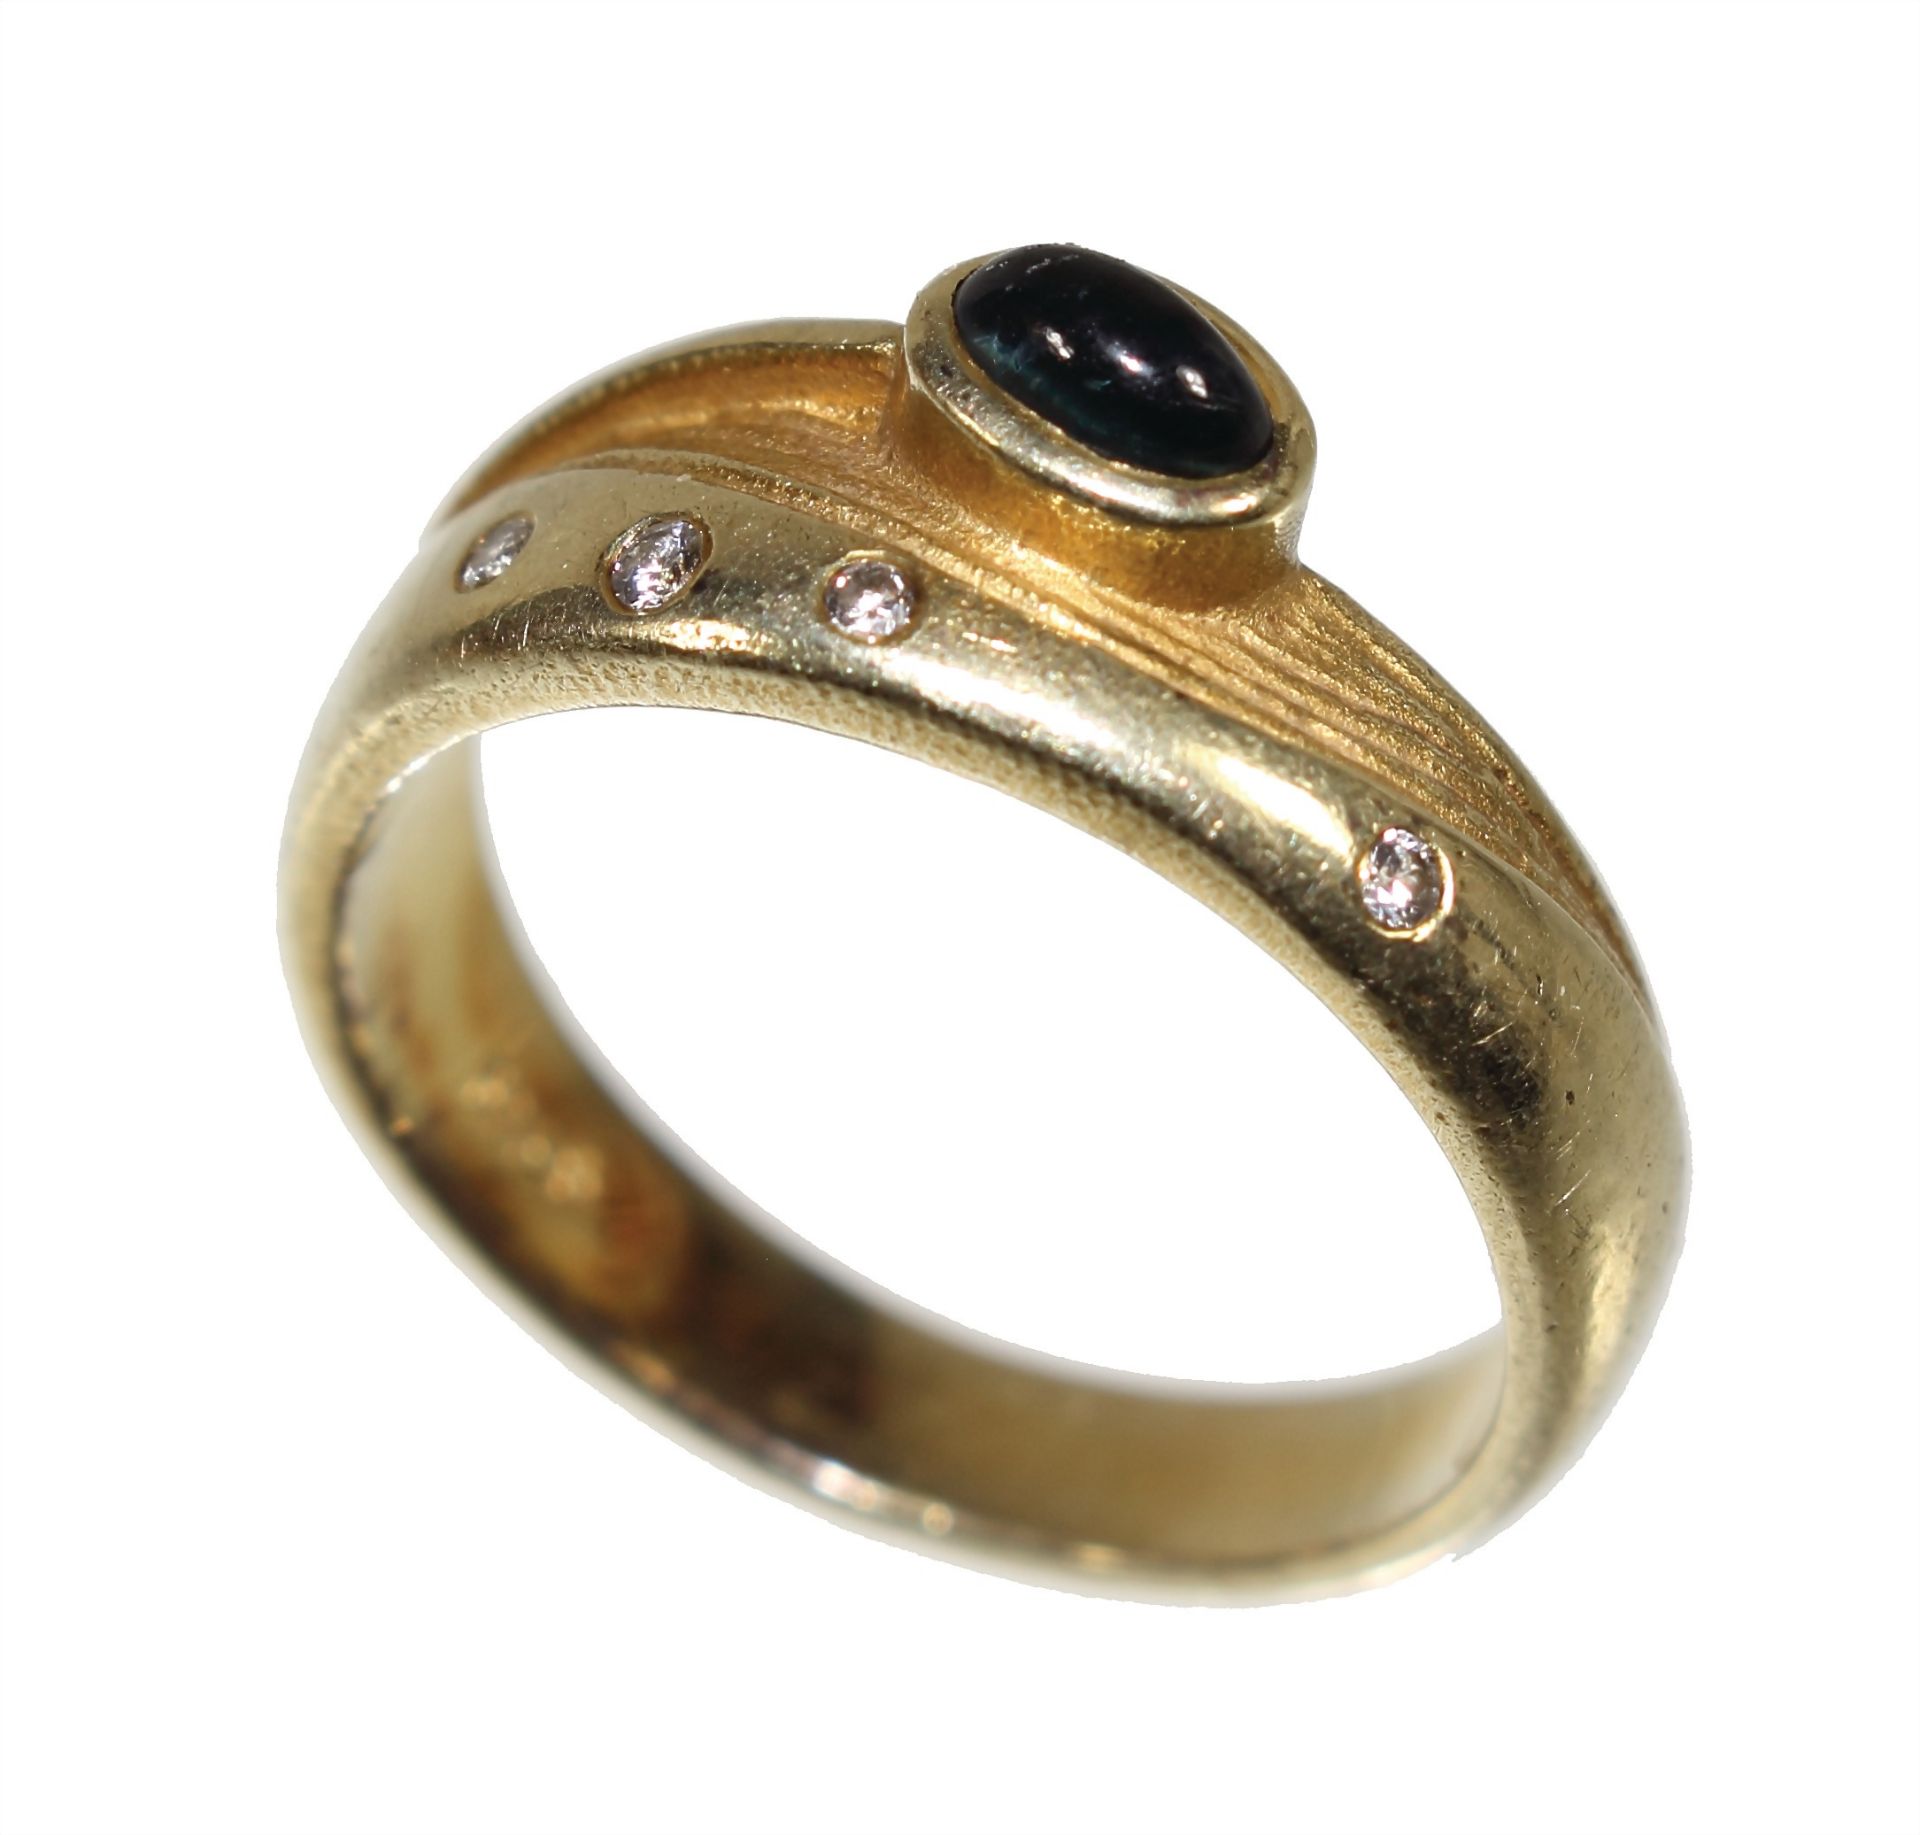 Ring, GG 585/000, 1 Saphir-Cabochon, 4 Brillanten ca. 0,04 ct tw/w-vsi, RW ca. 54,0 - Bild 3 aus 4